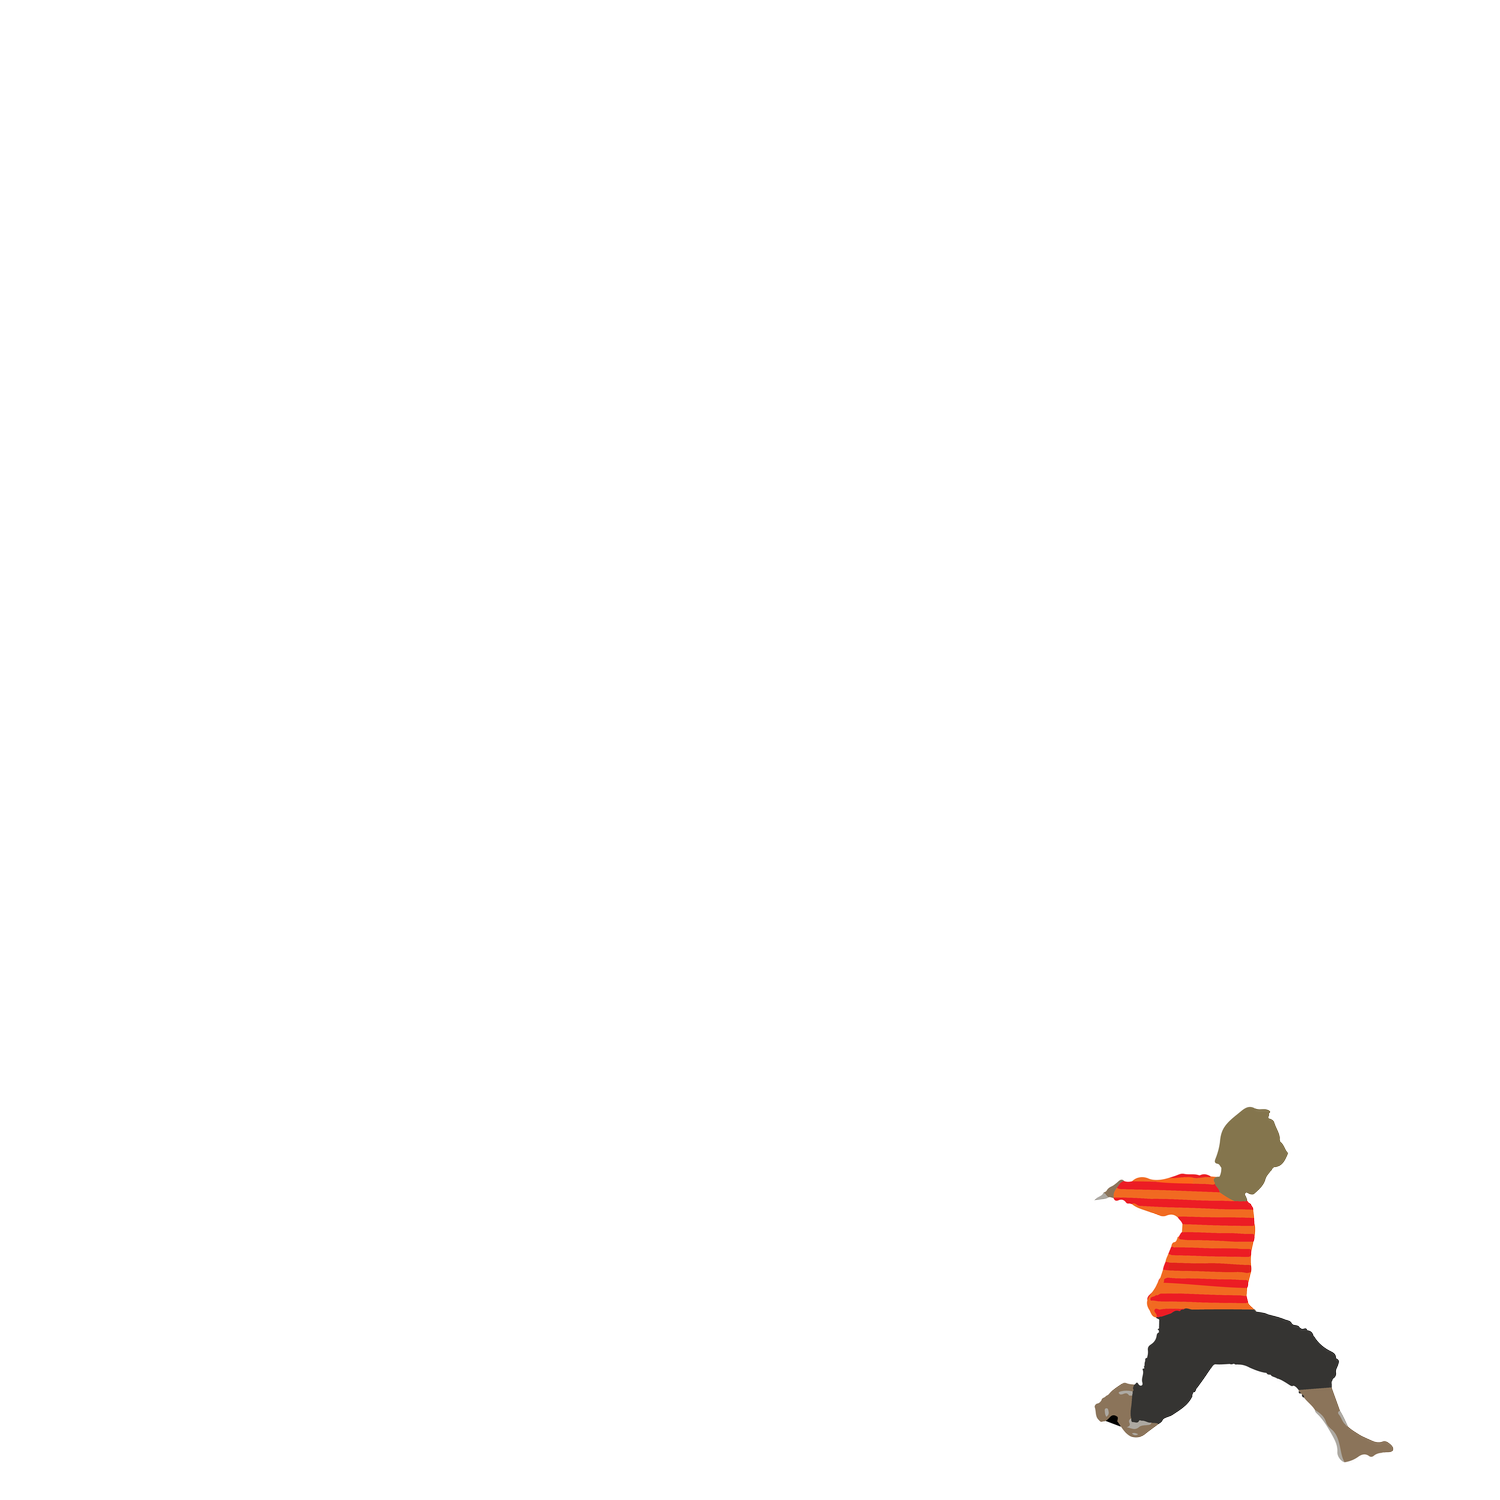 The Hub SACARE